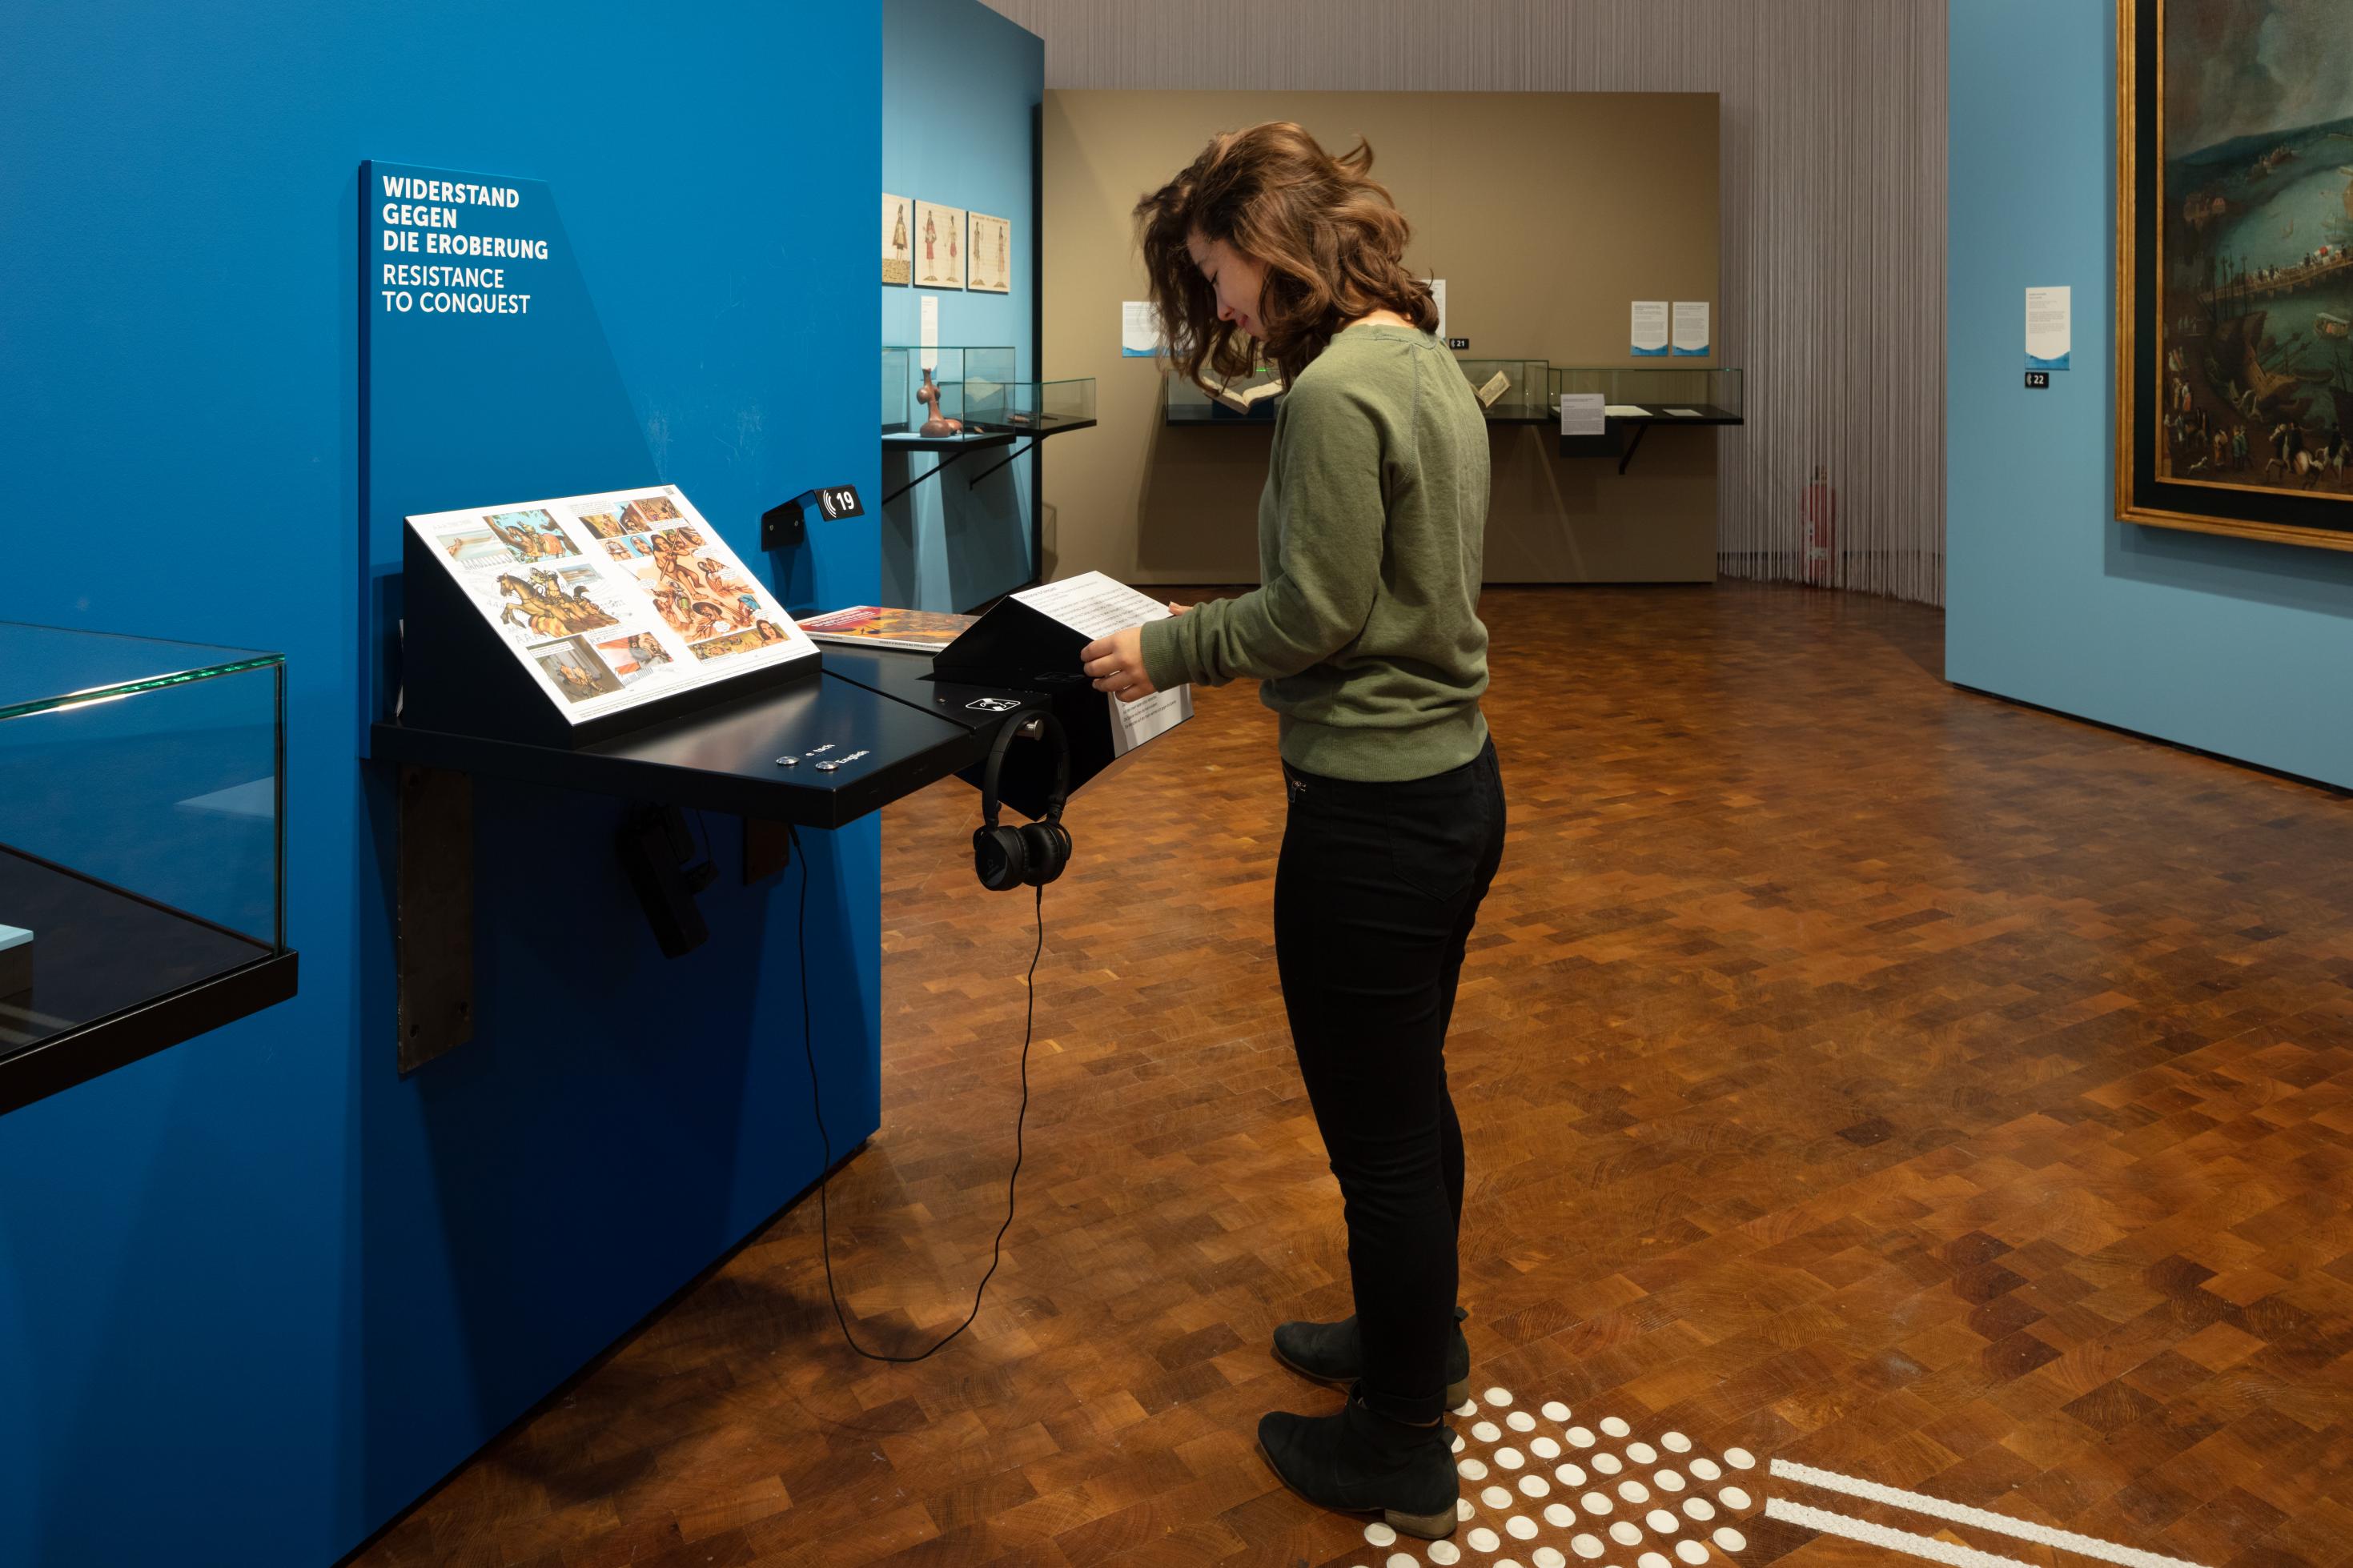 Eine junge Frau steht im Museum vor einer Info-Station und dreht an einer Trommel, die Informationen in verschiedenen Formen anbietet.